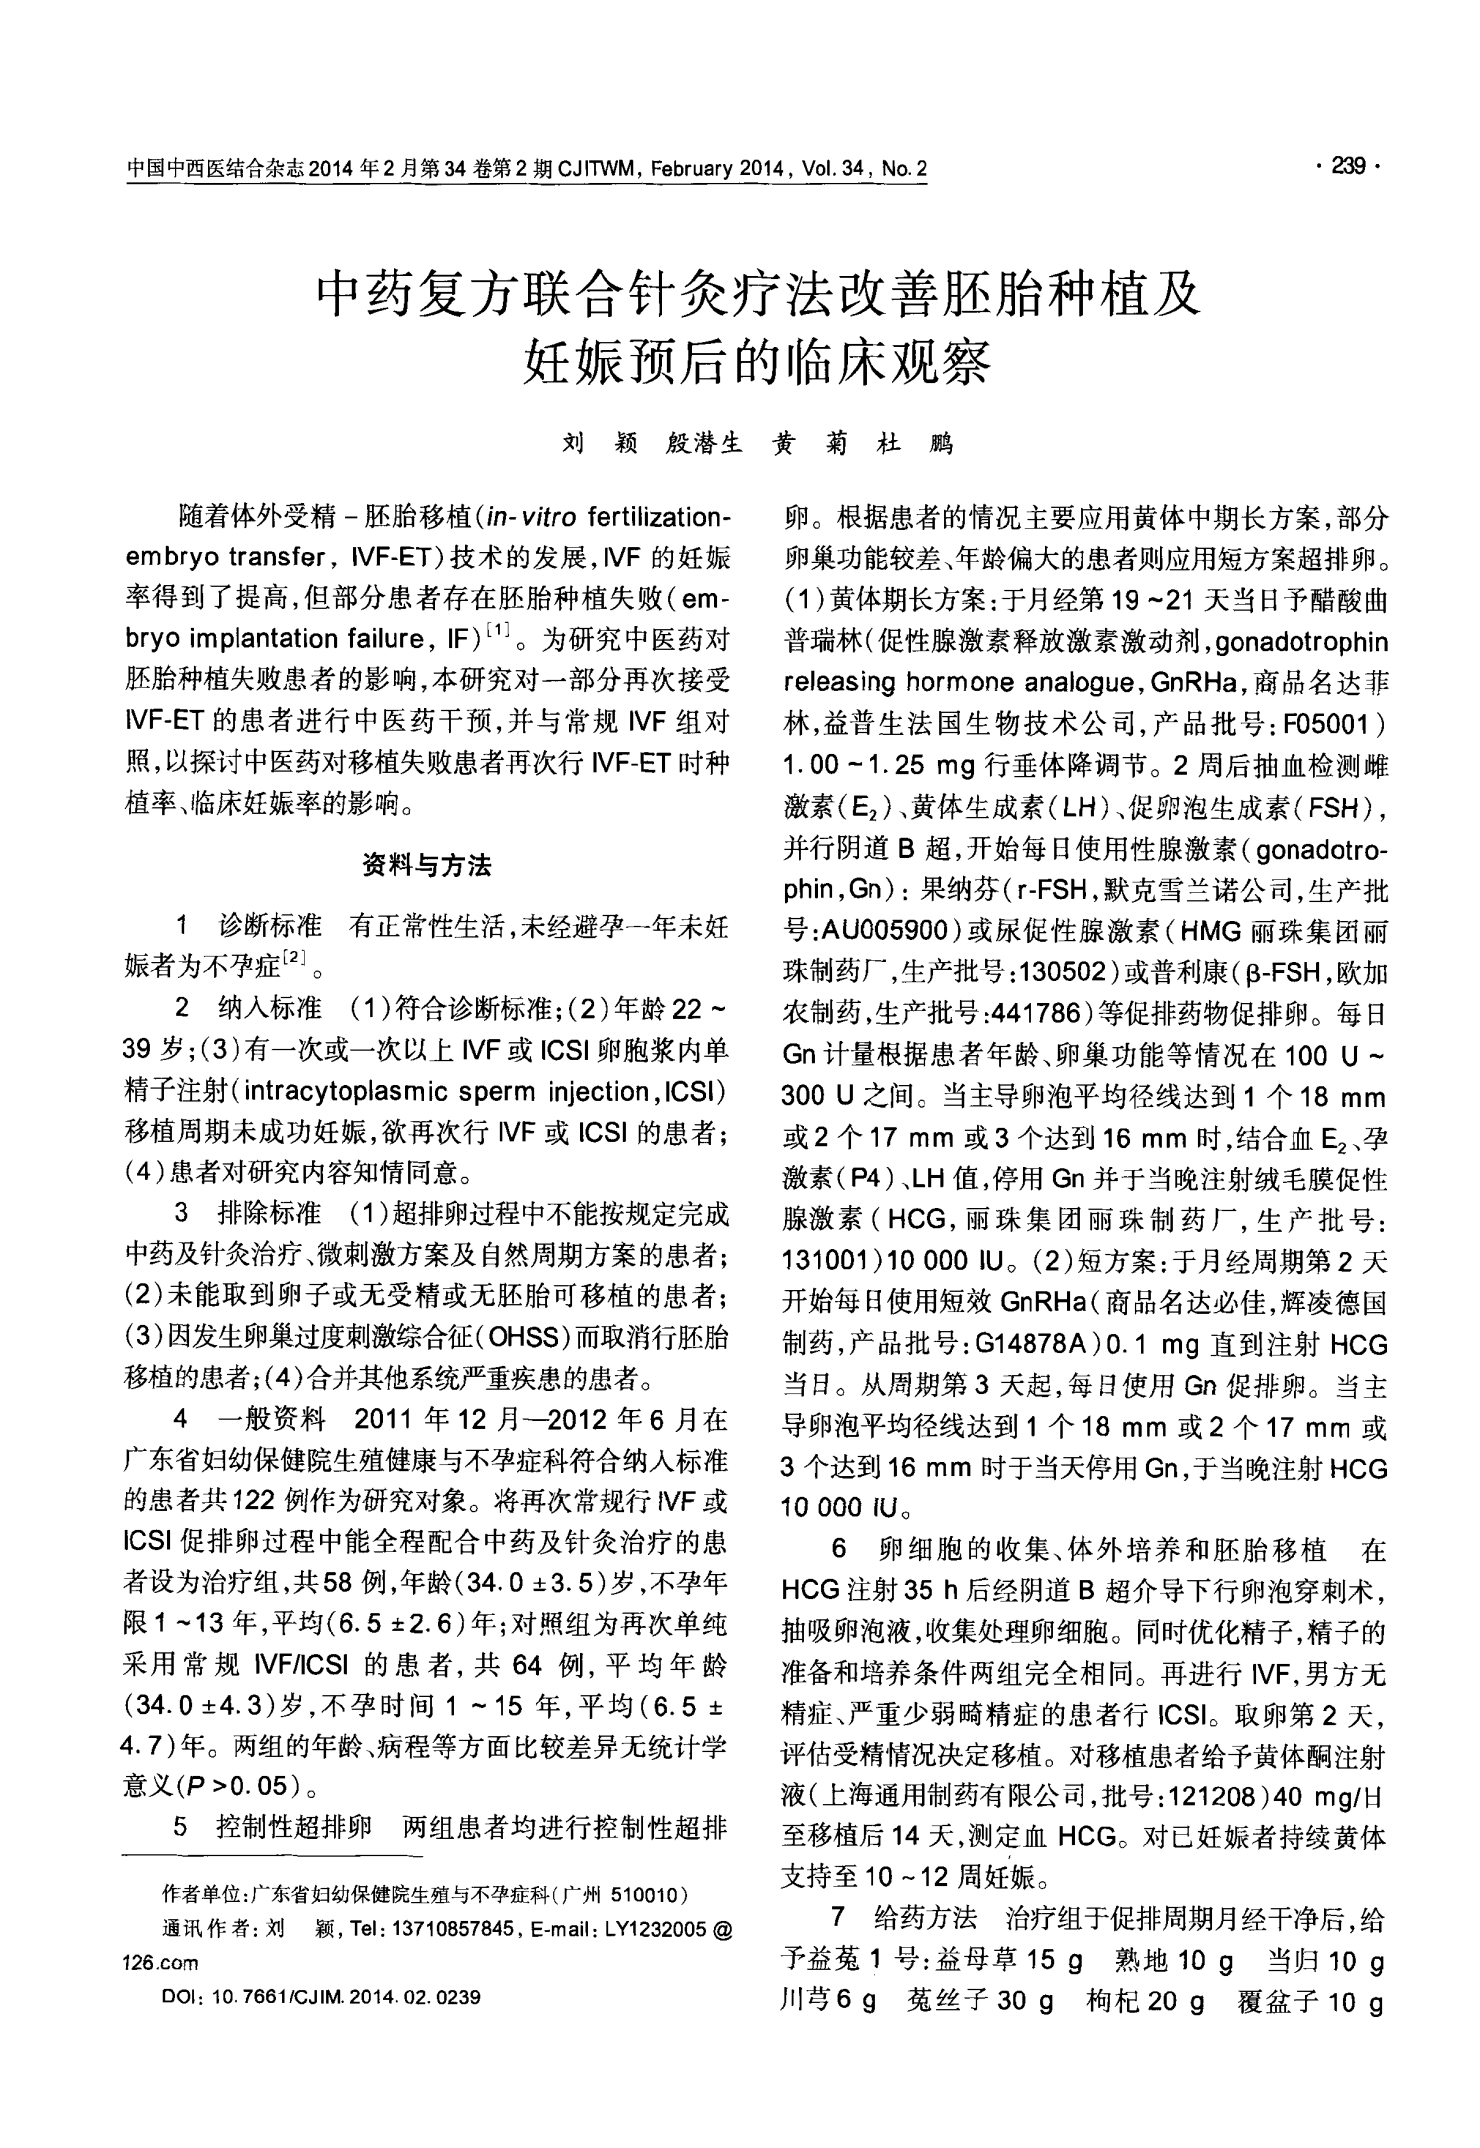 中药复方联合针灸疗法改善胚胎种植及妊娠预后的临床观察-中国中西医结合杂志